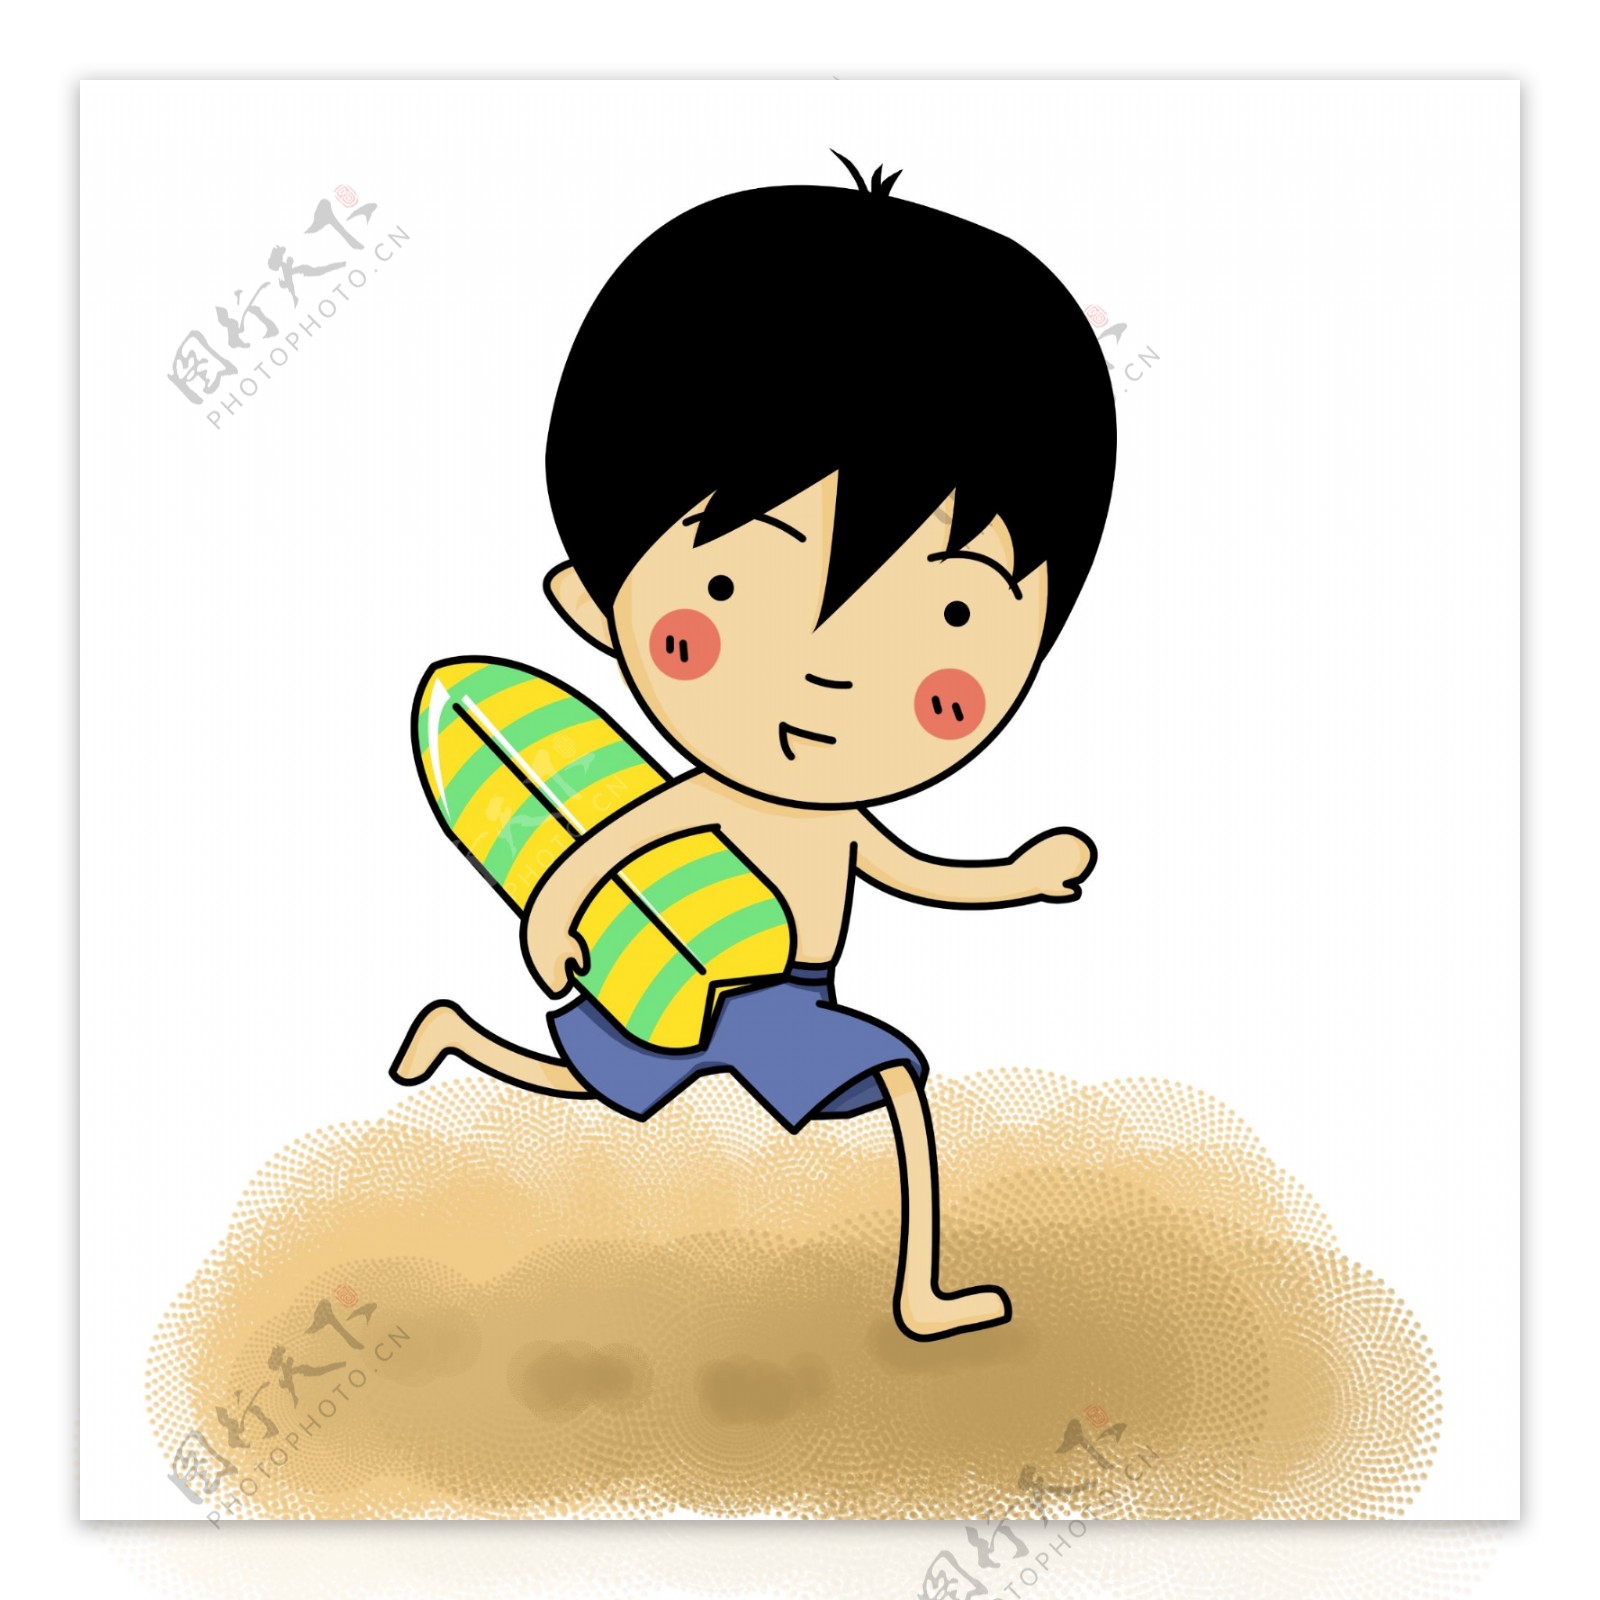 沙滩上手抱冲浪板的小男孩